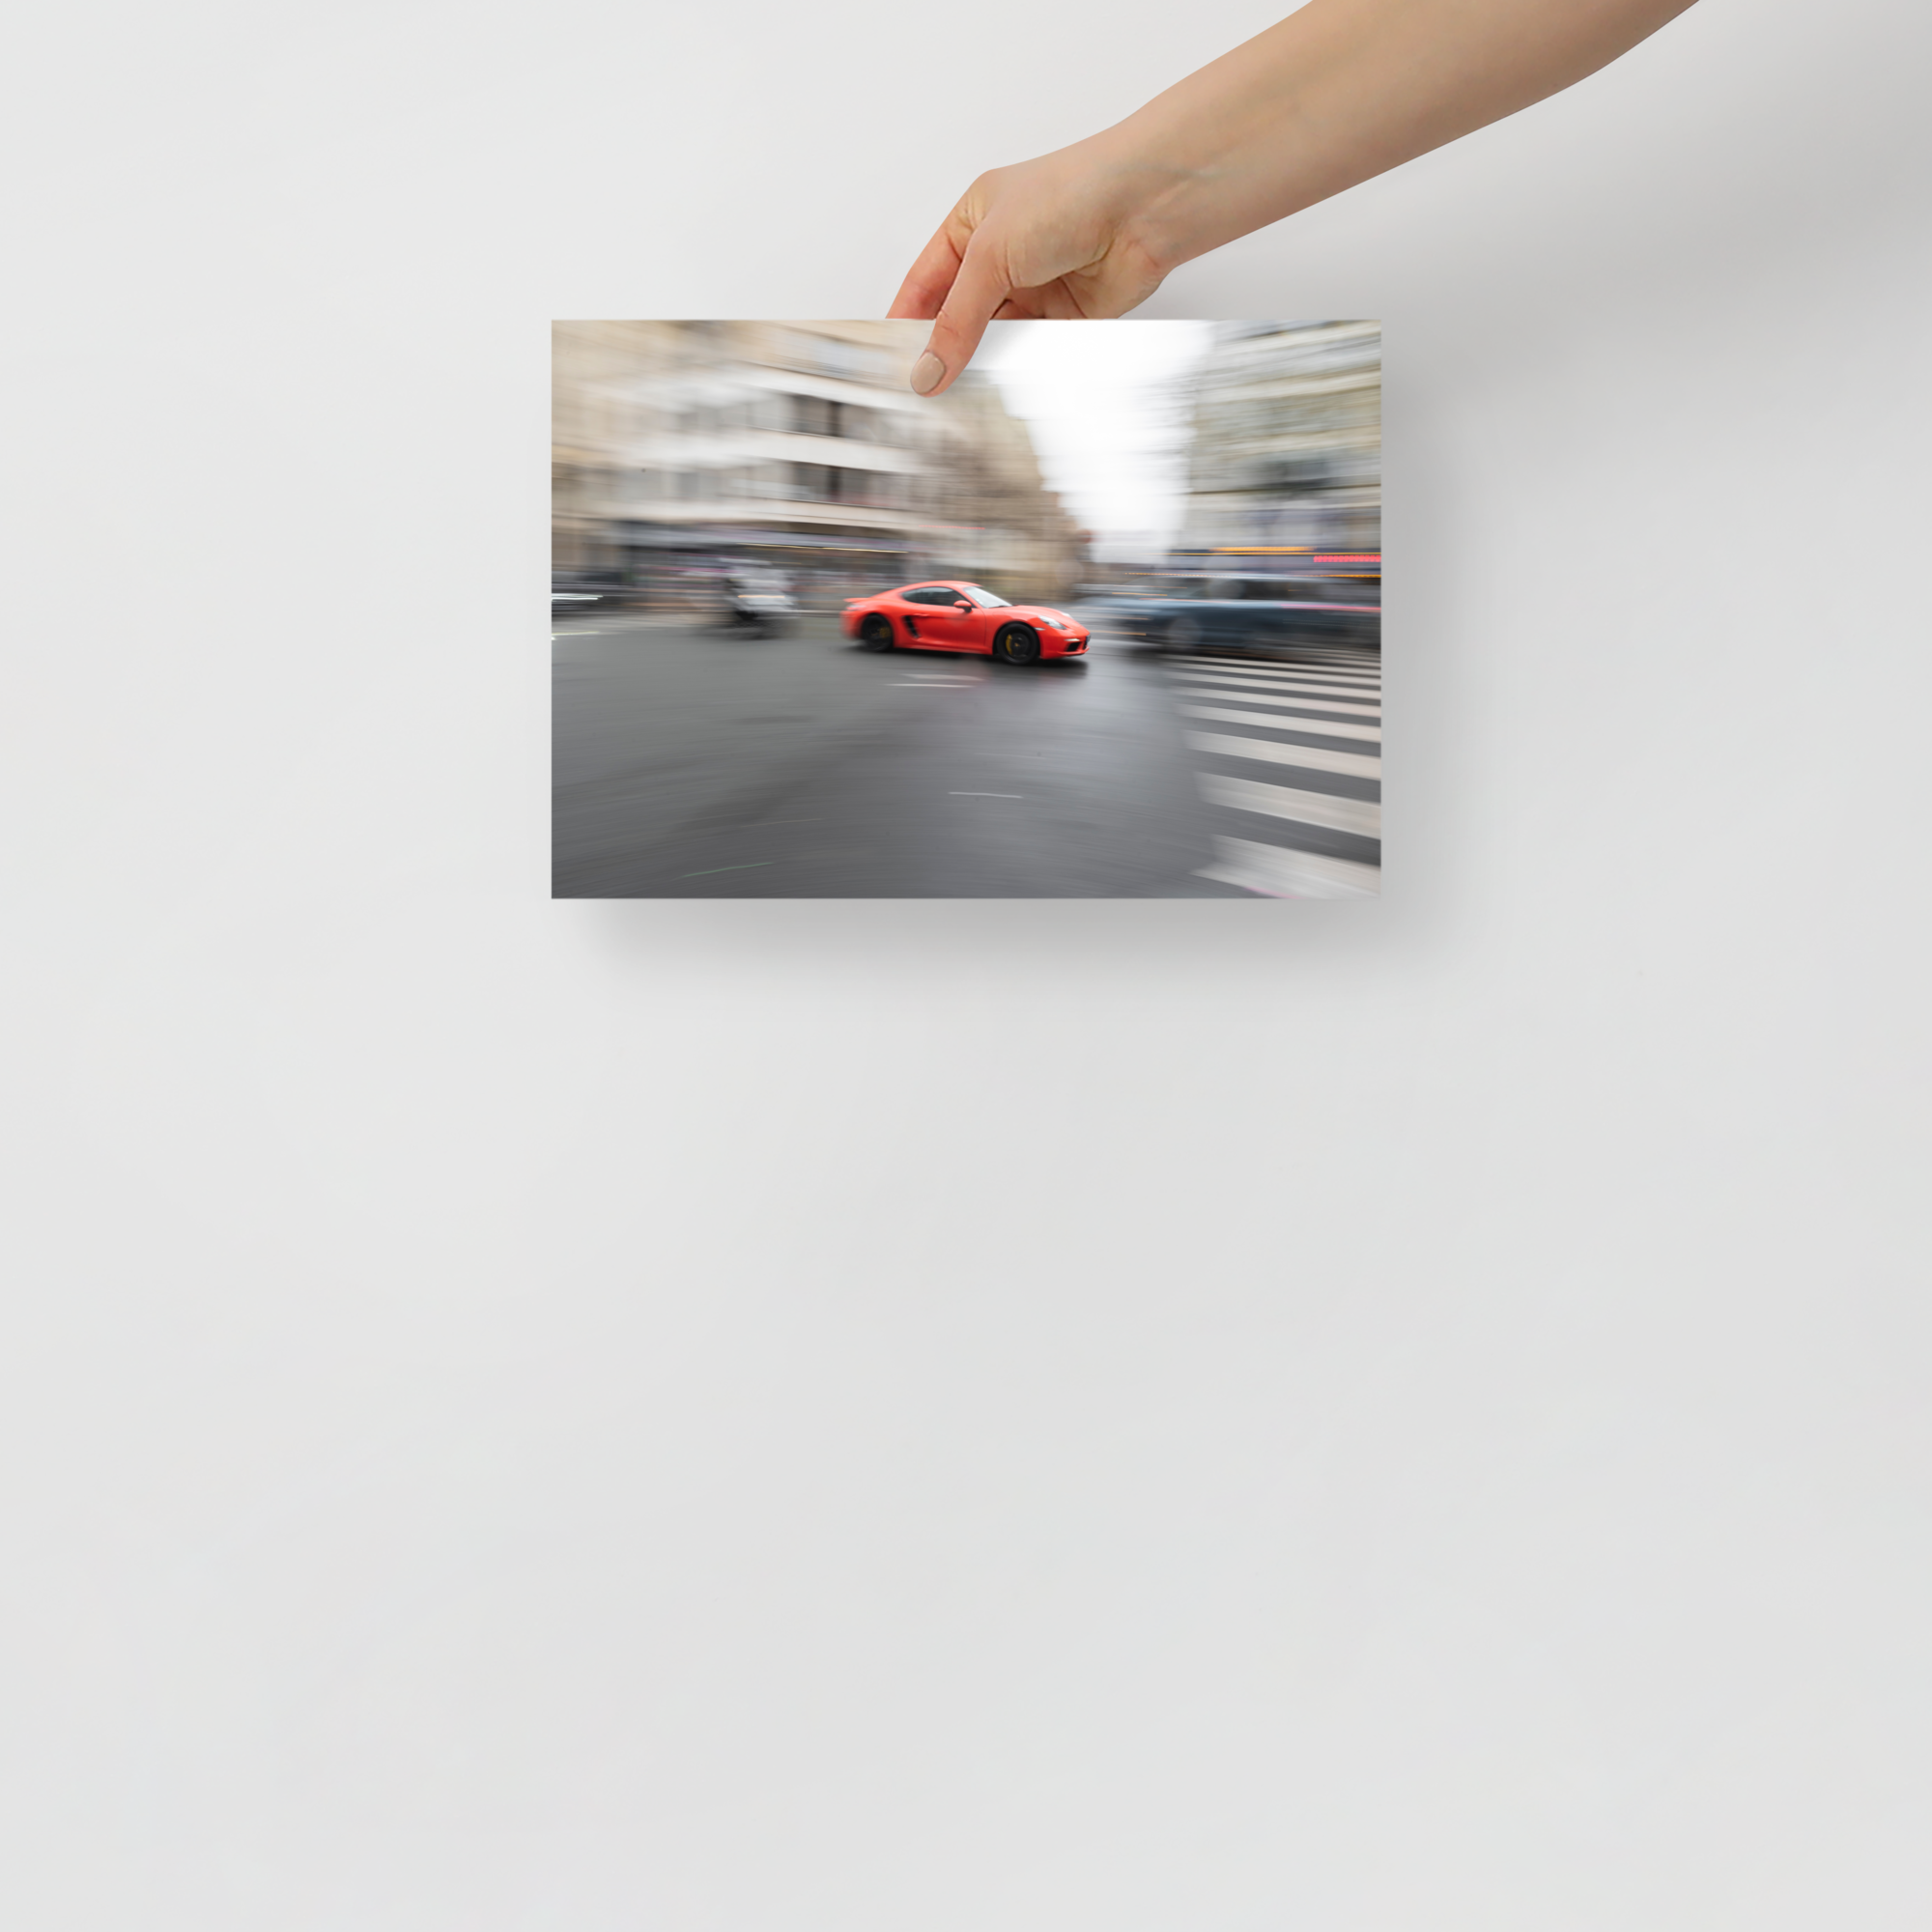 Poster mural - Porsche 718 Cayman S – Photographie de voiture de sport – Poster photo, poster XXL, photographie murale et des posters muraux unique au monde. La boutique de posters créée par Yann Peccard un Photographe français.